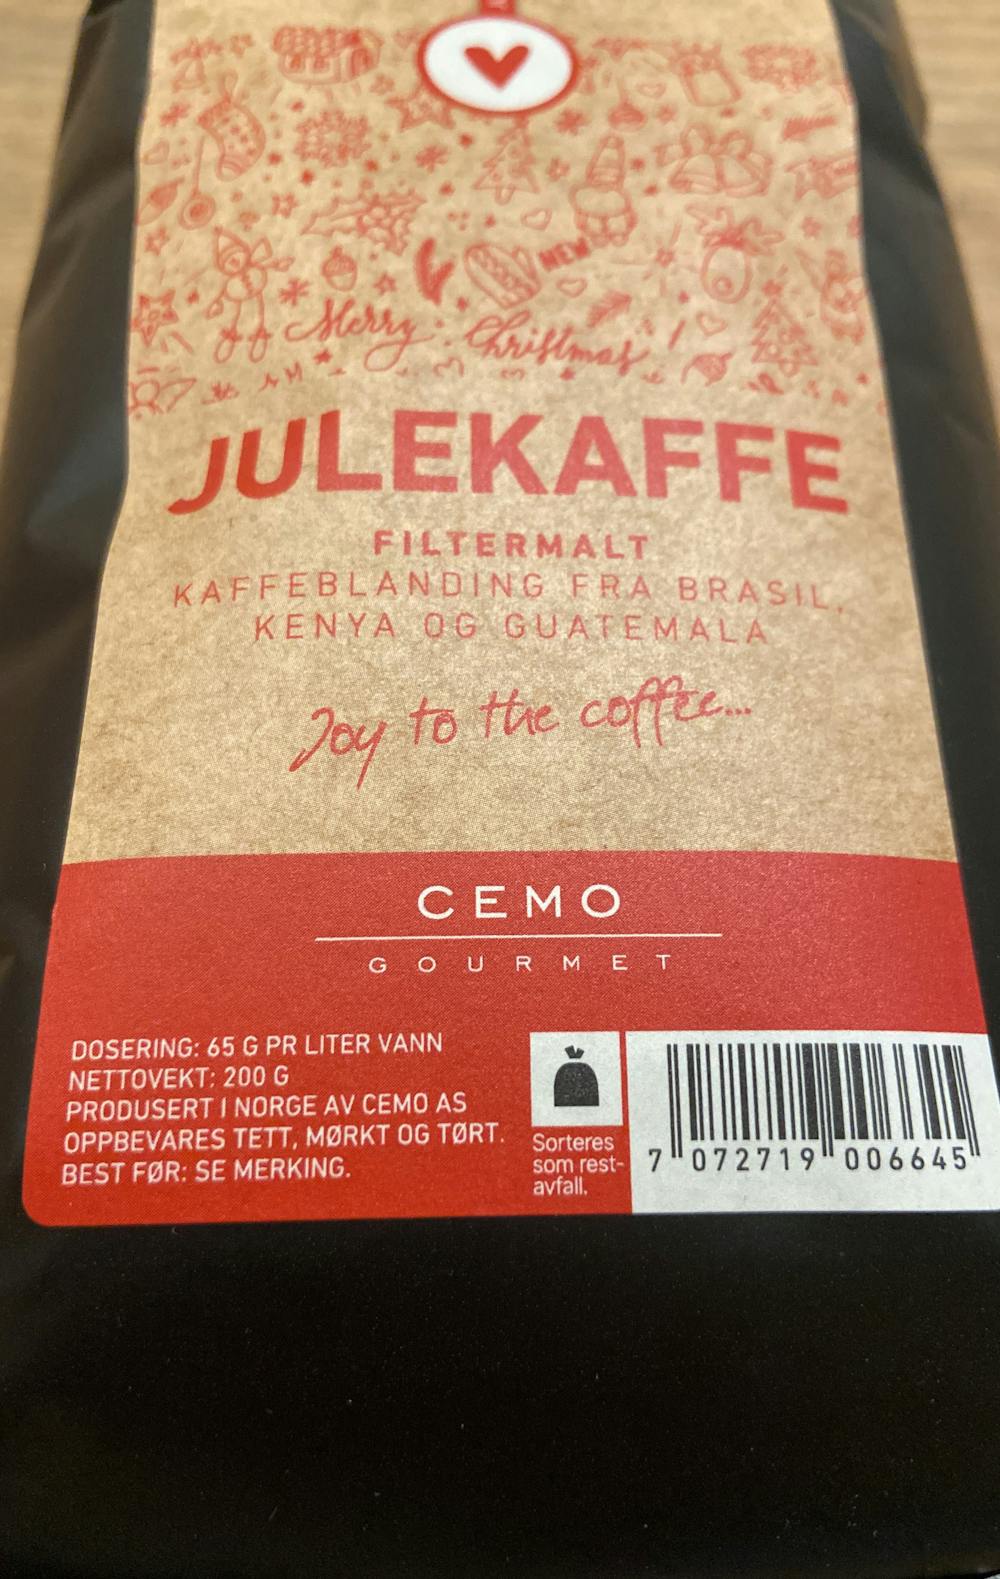 Ingredienslisten til Cemo gourmet Julekaffe